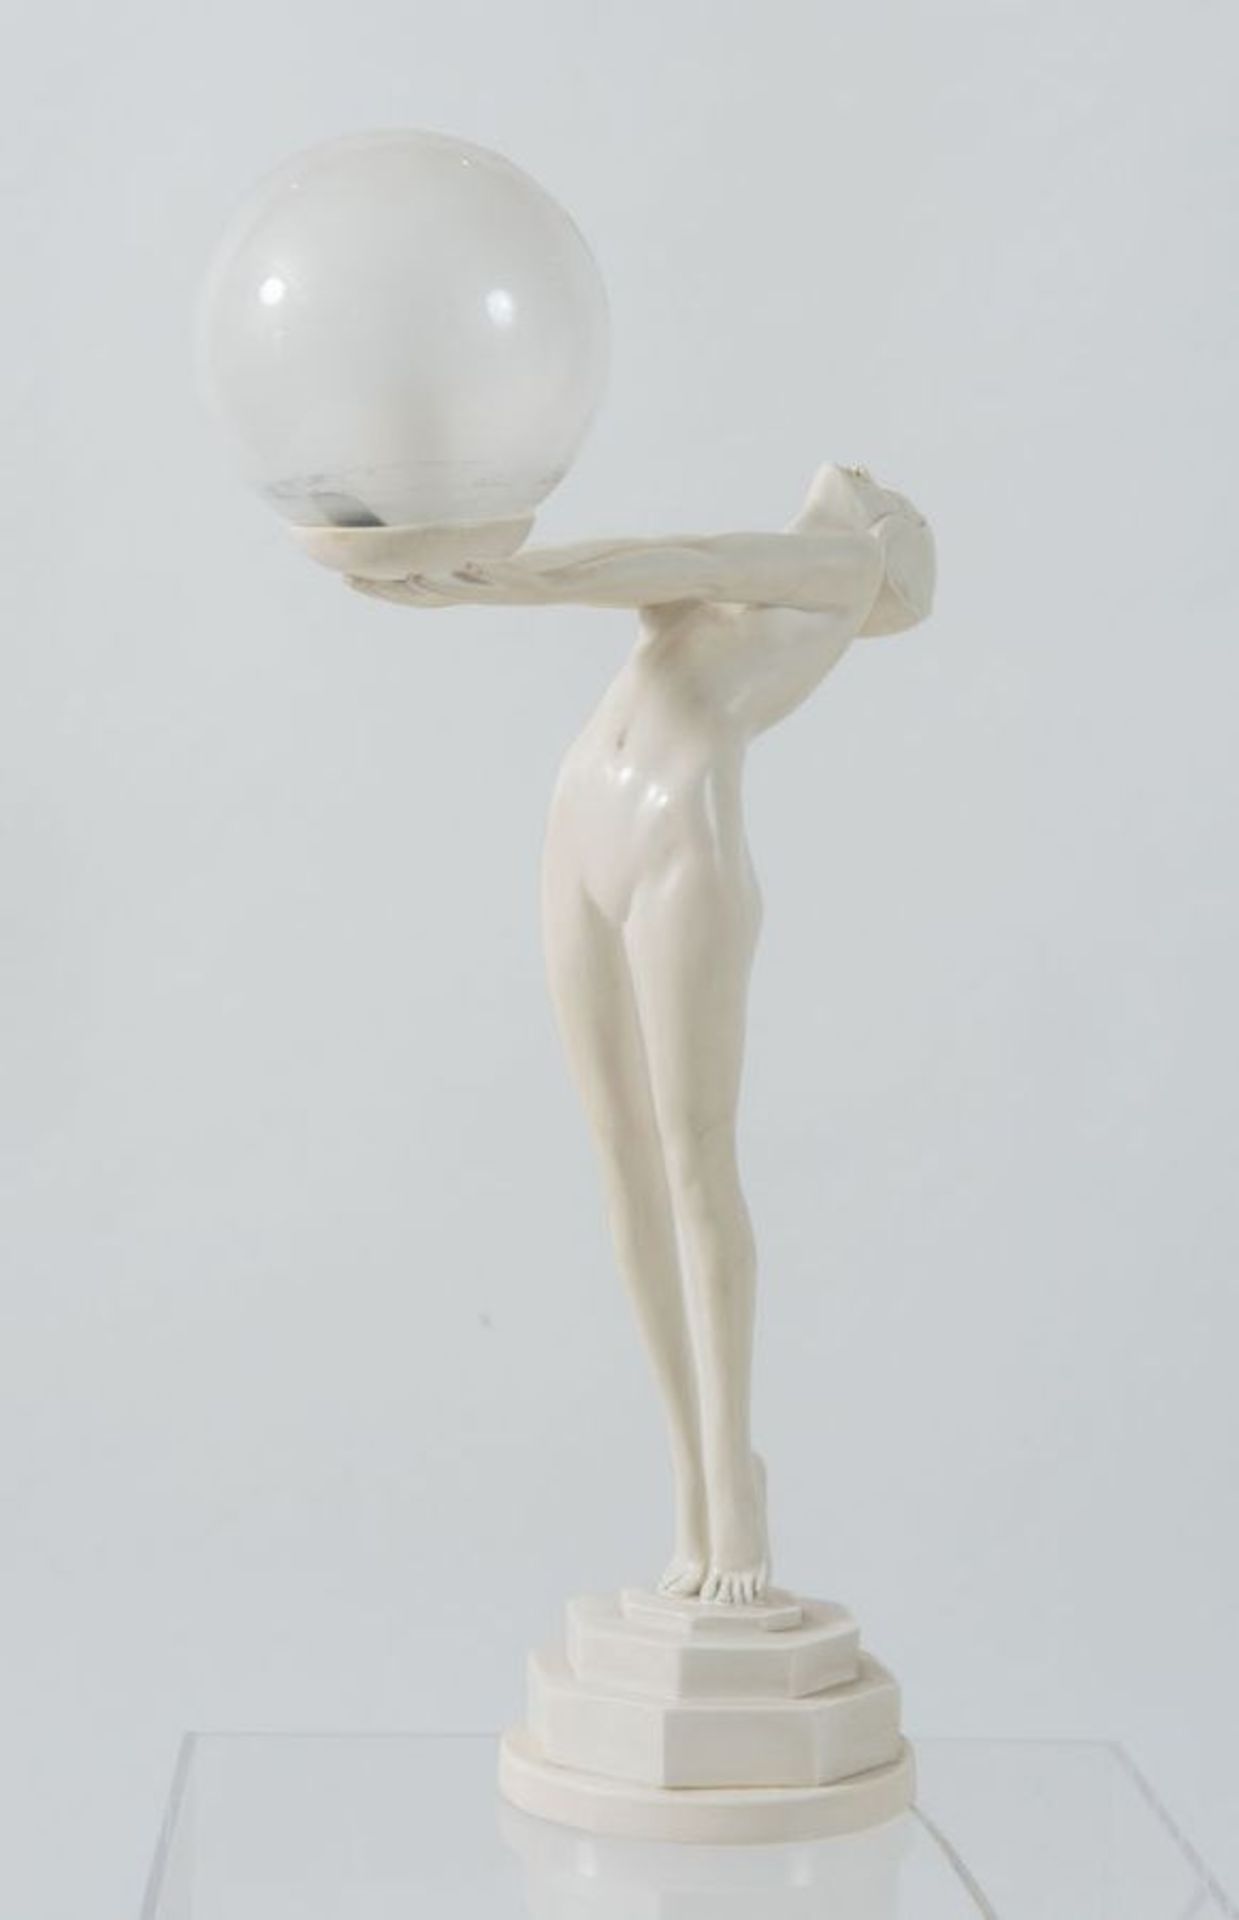 STONELITE Lampada da tavolo in resina con sfera in vetro. Marchio originale. Prod. Stonelite, Italia - Bild 2 aus 3